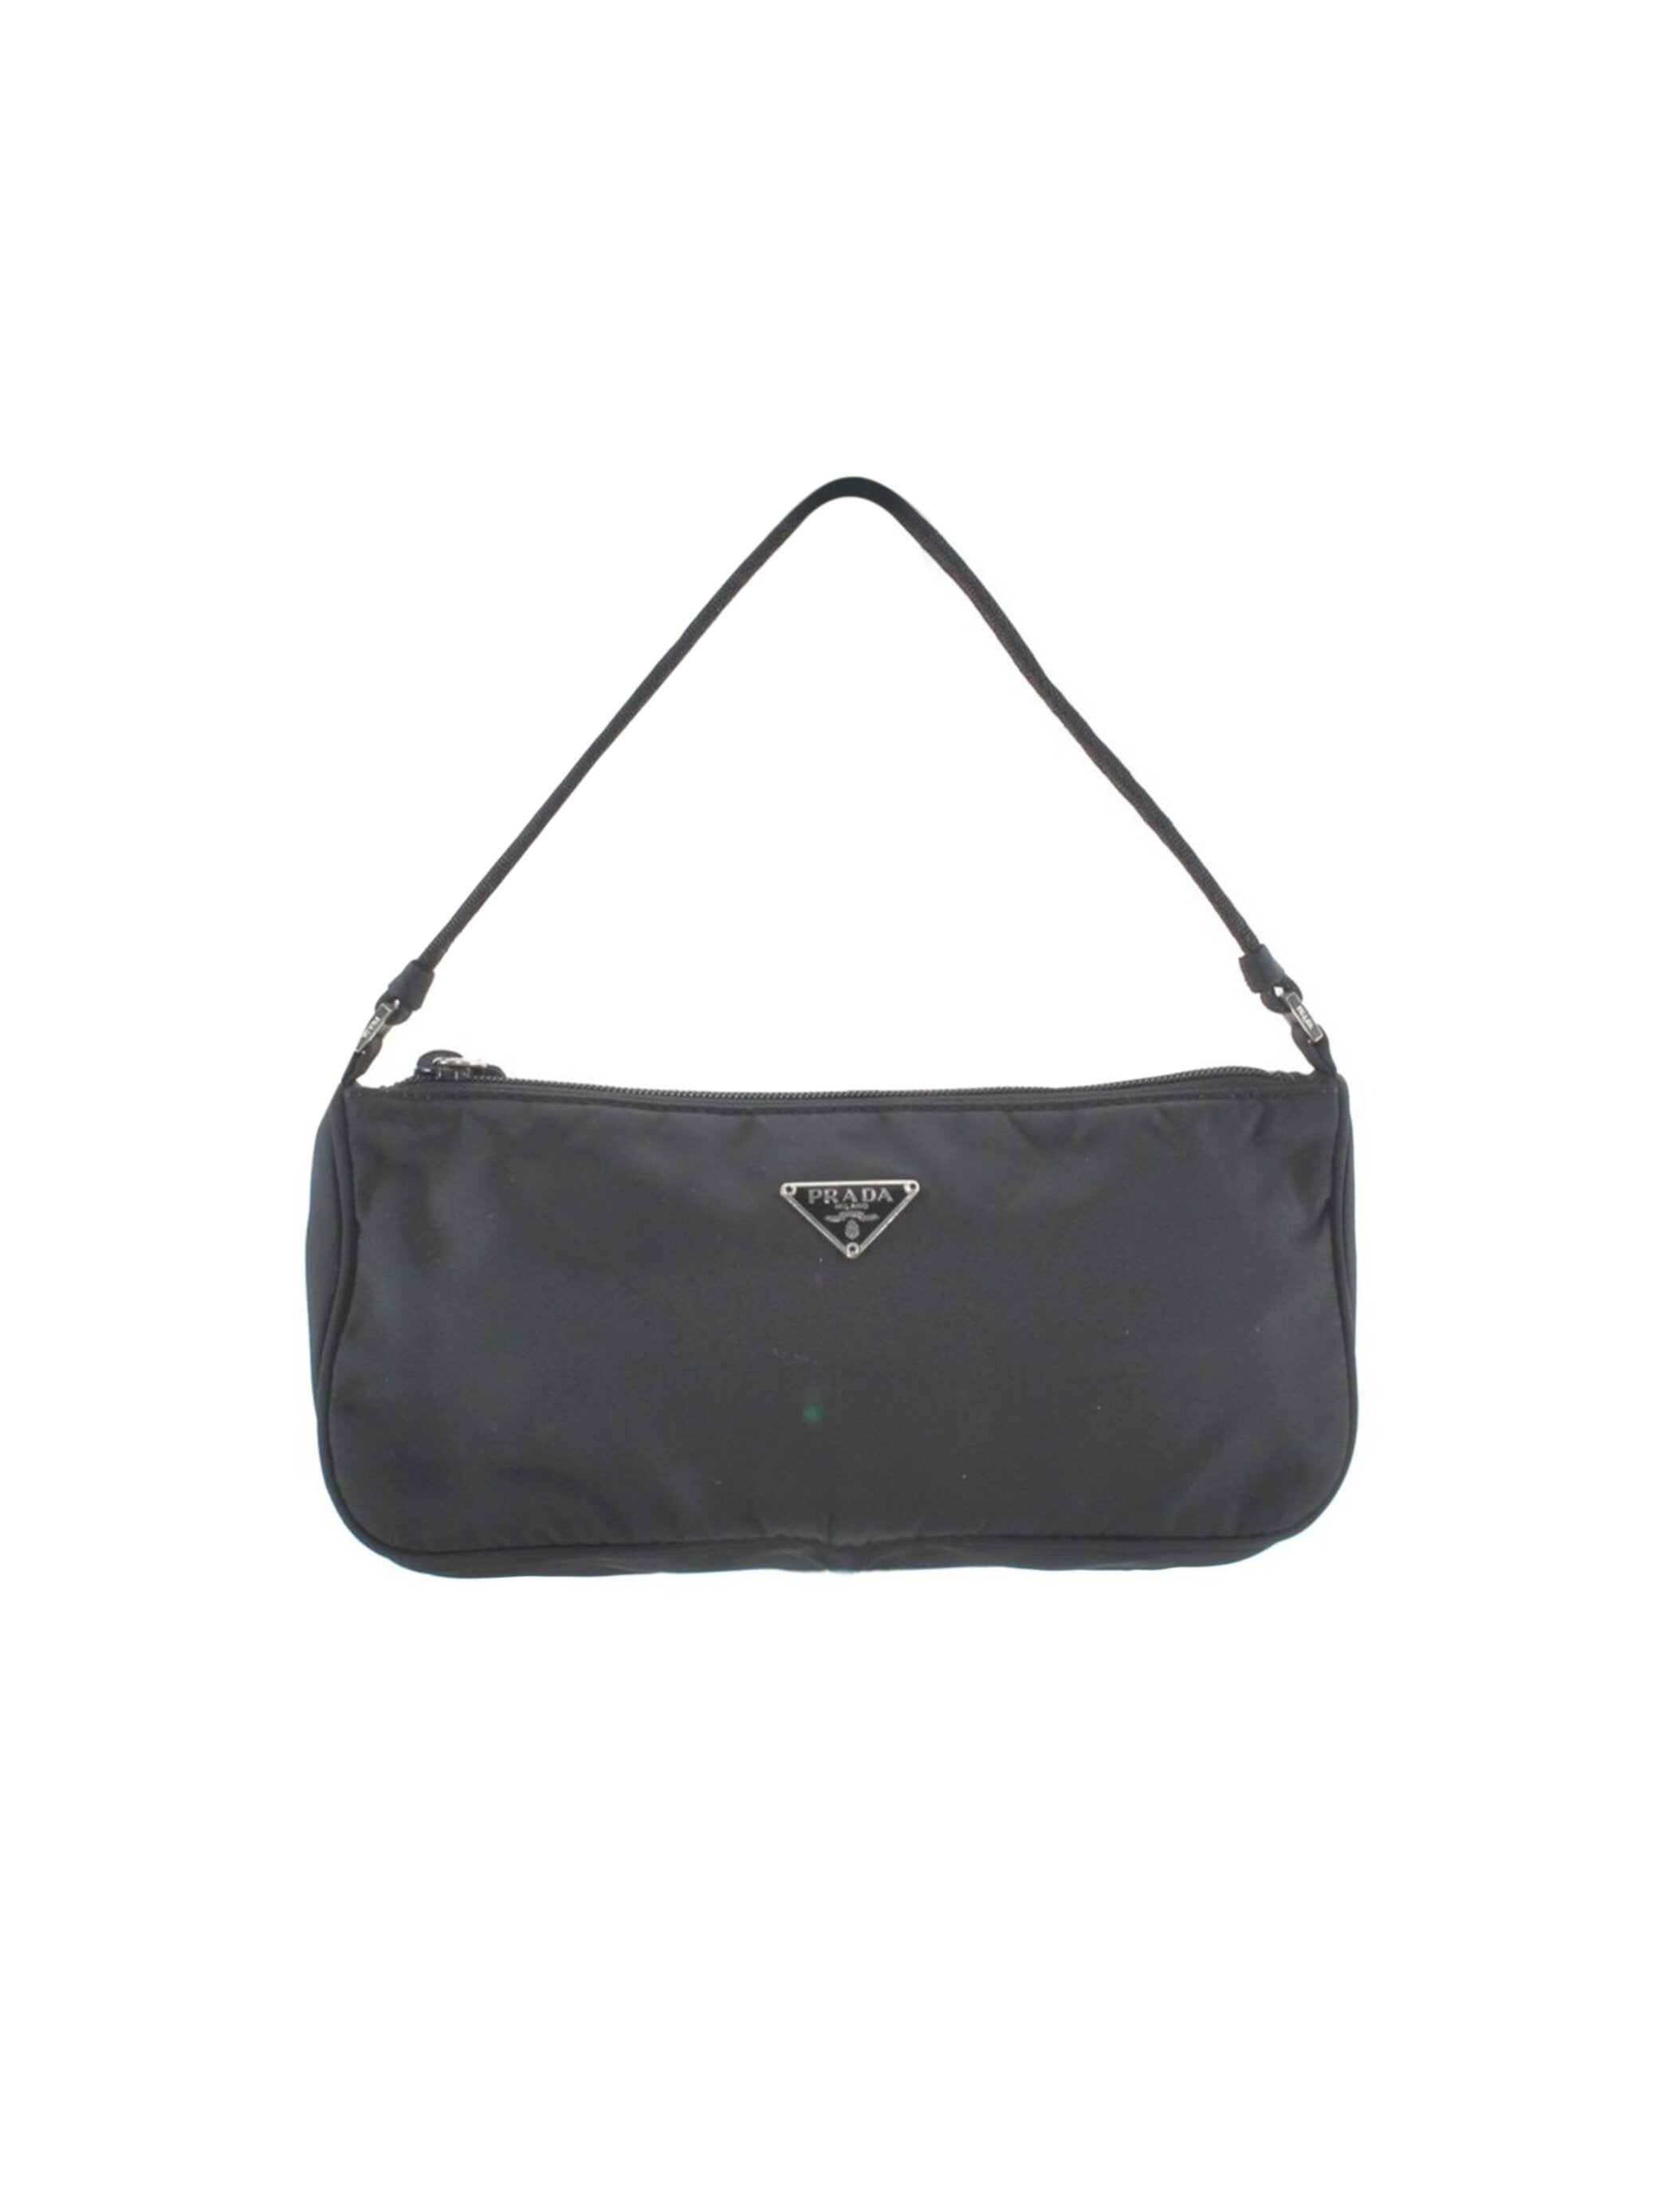 Prada 2000s Black Nylon Tessuto Handbag